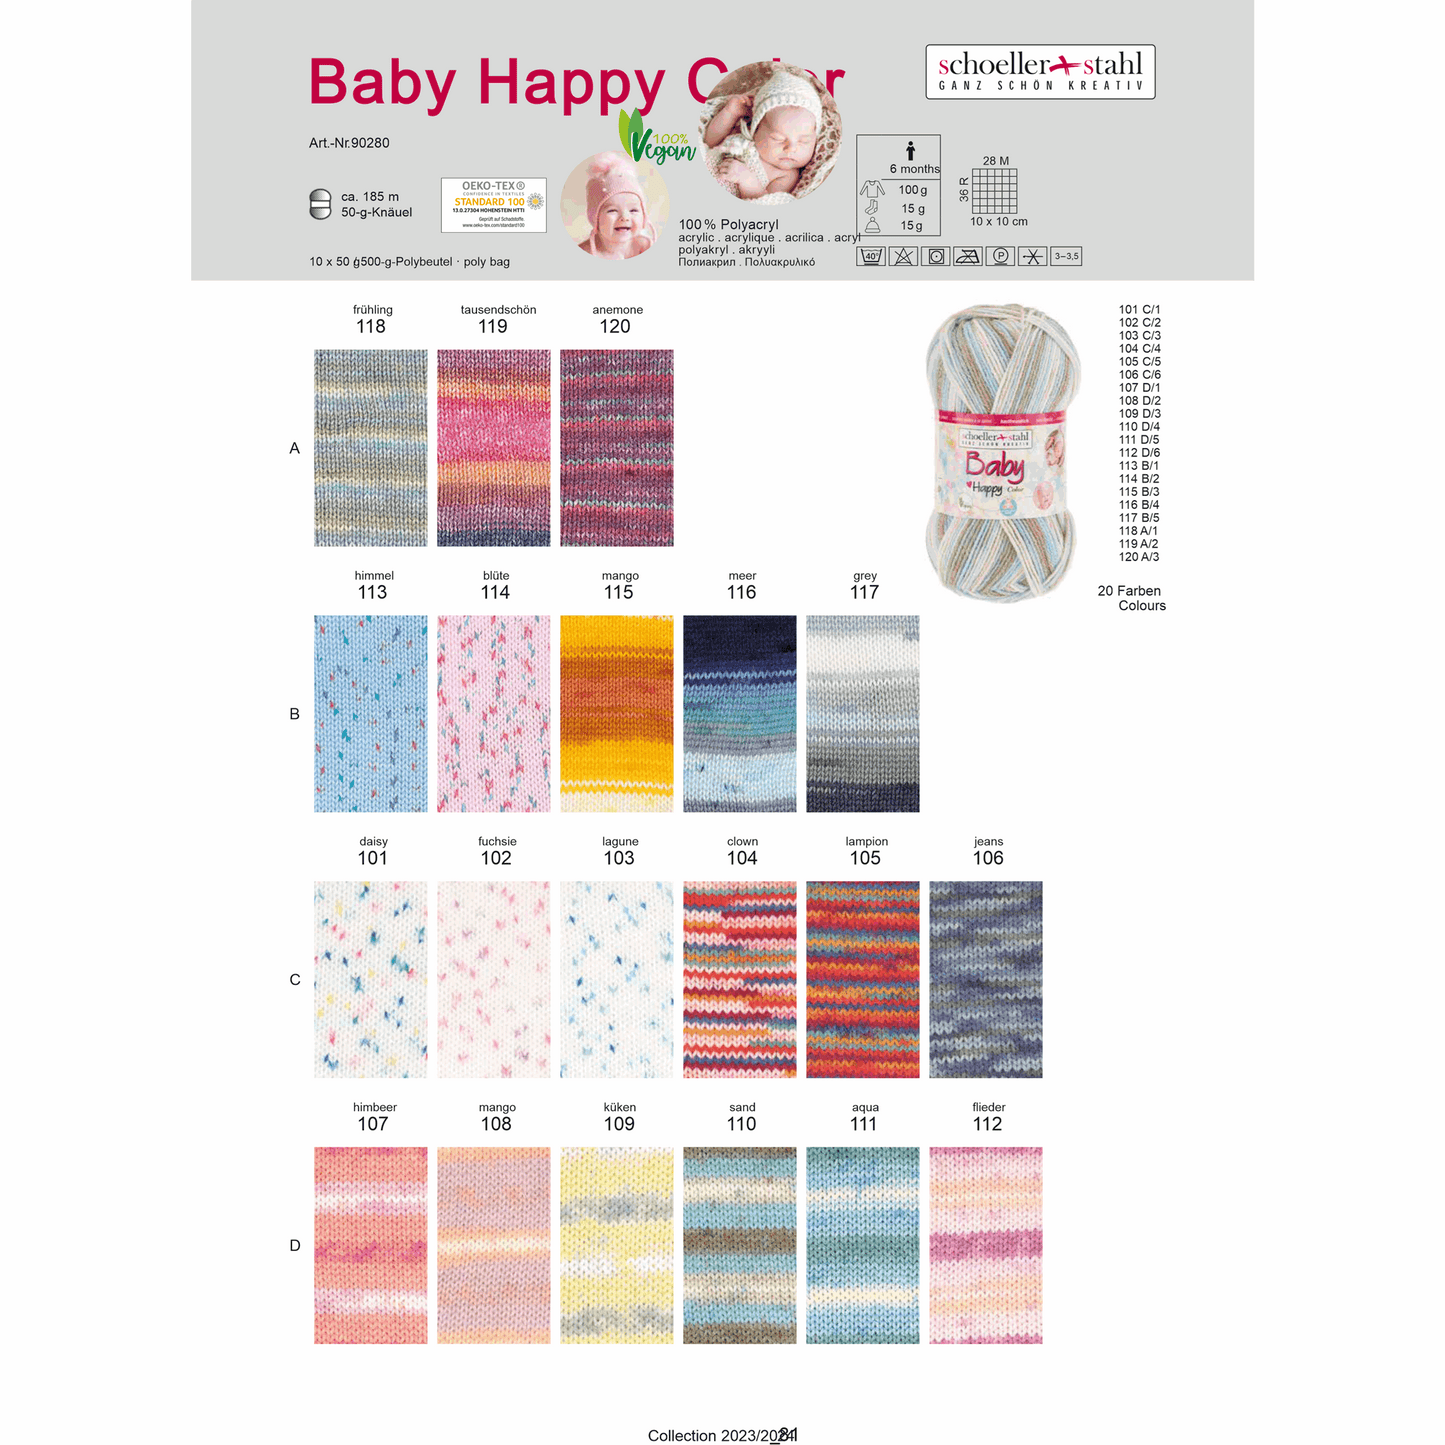 Baby happy color 50g, 90280, color 112, lilac